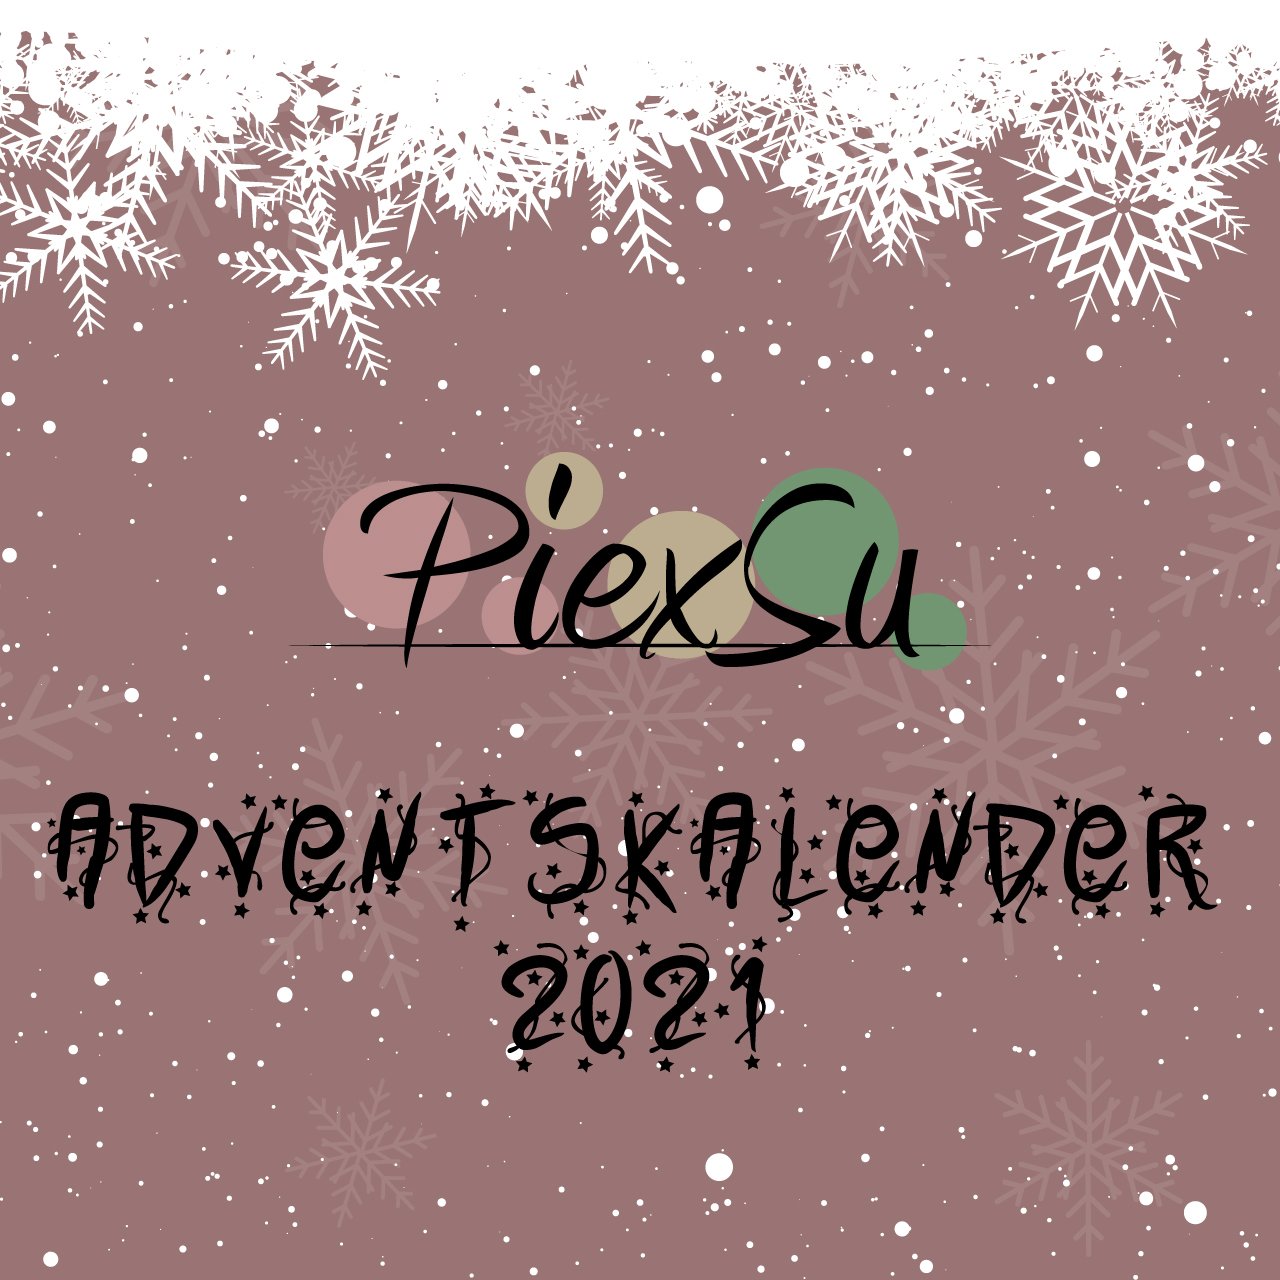 PiexSu-Adventskalender-2021-Titelbild